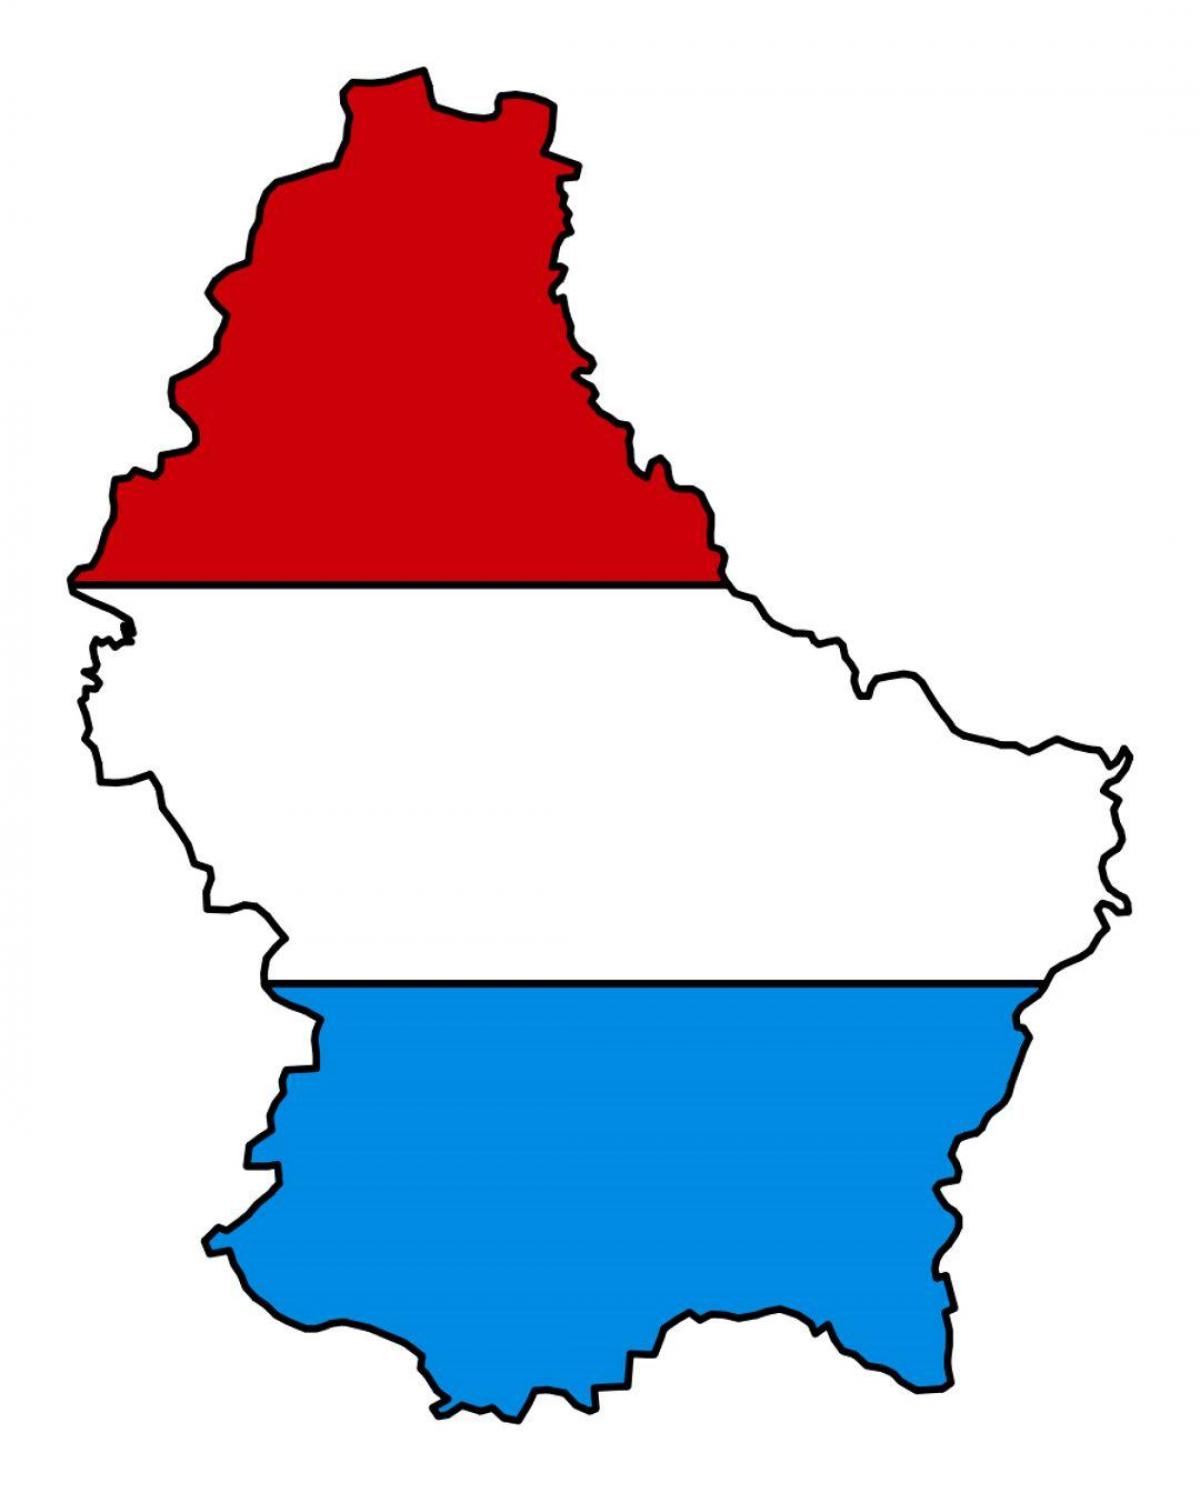 नक्शे के लक्ज़मबर्ग झंडा 